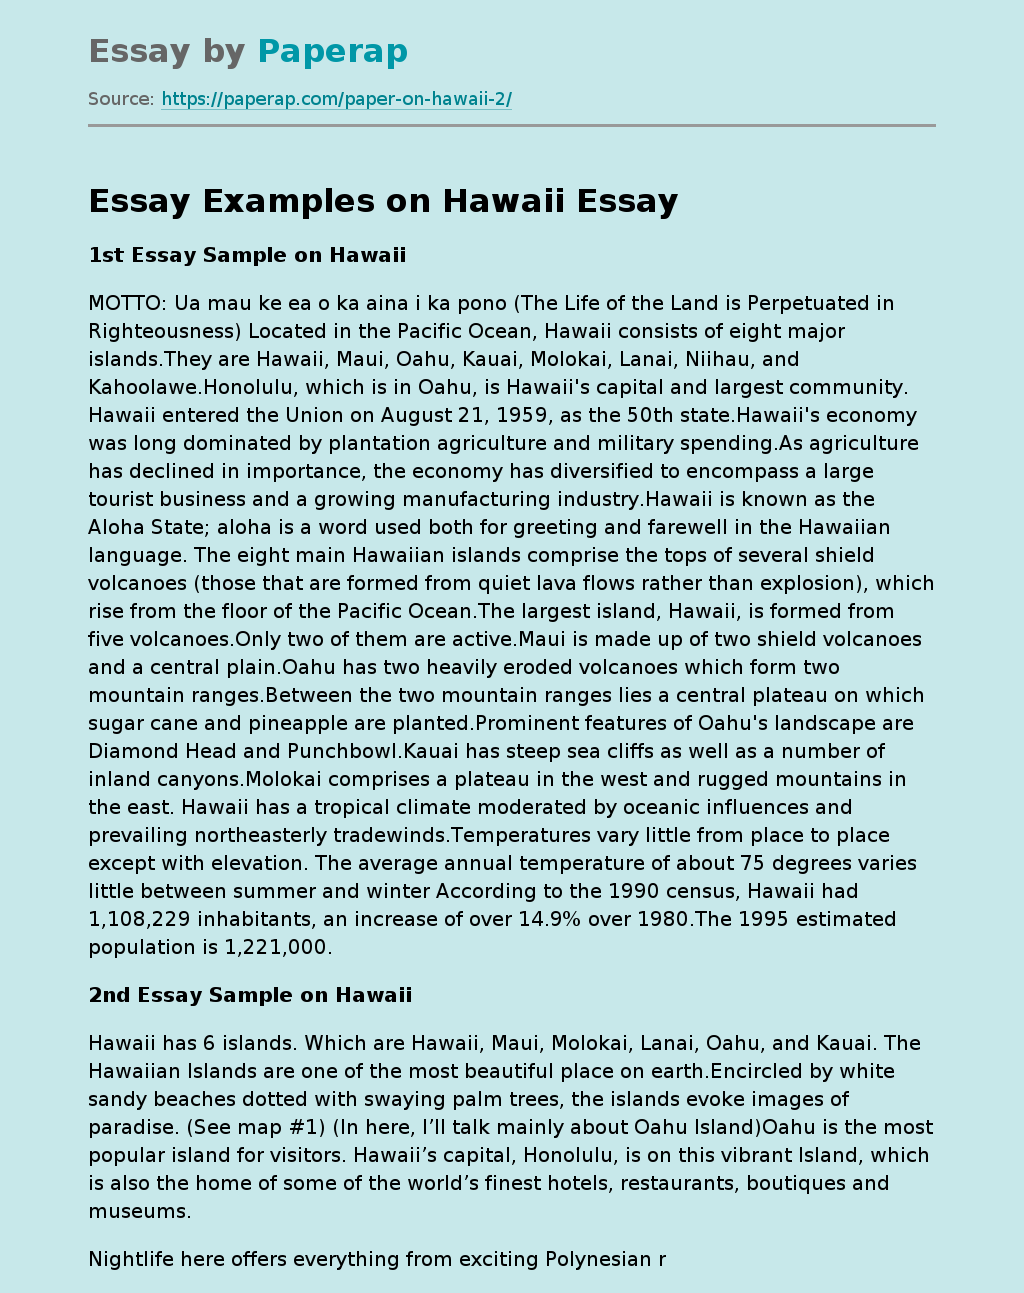 Essay Examples on Hawaii